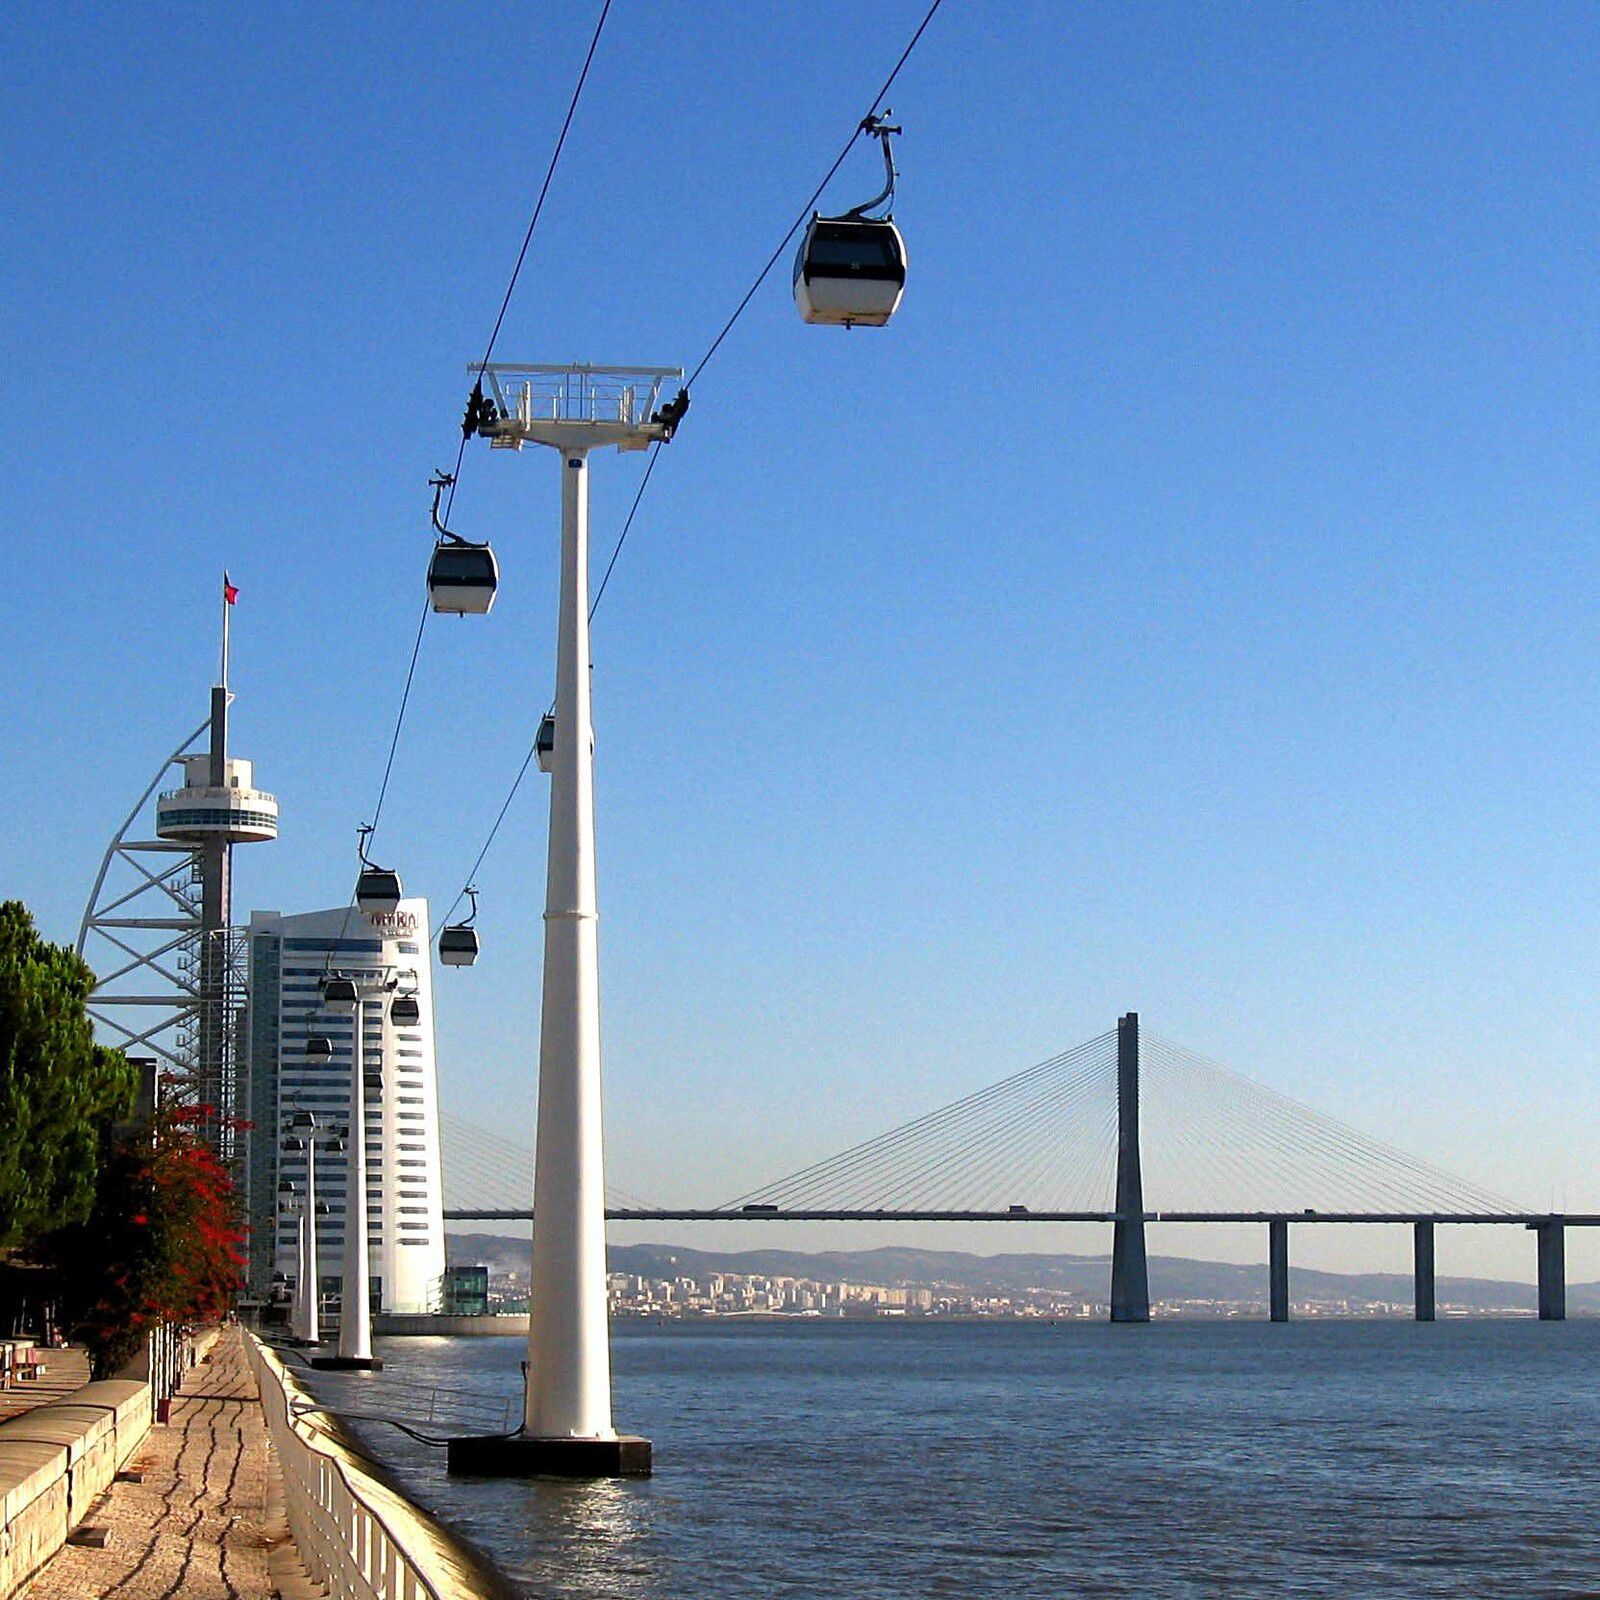 Lisbonne - Mardi 7 août 2012